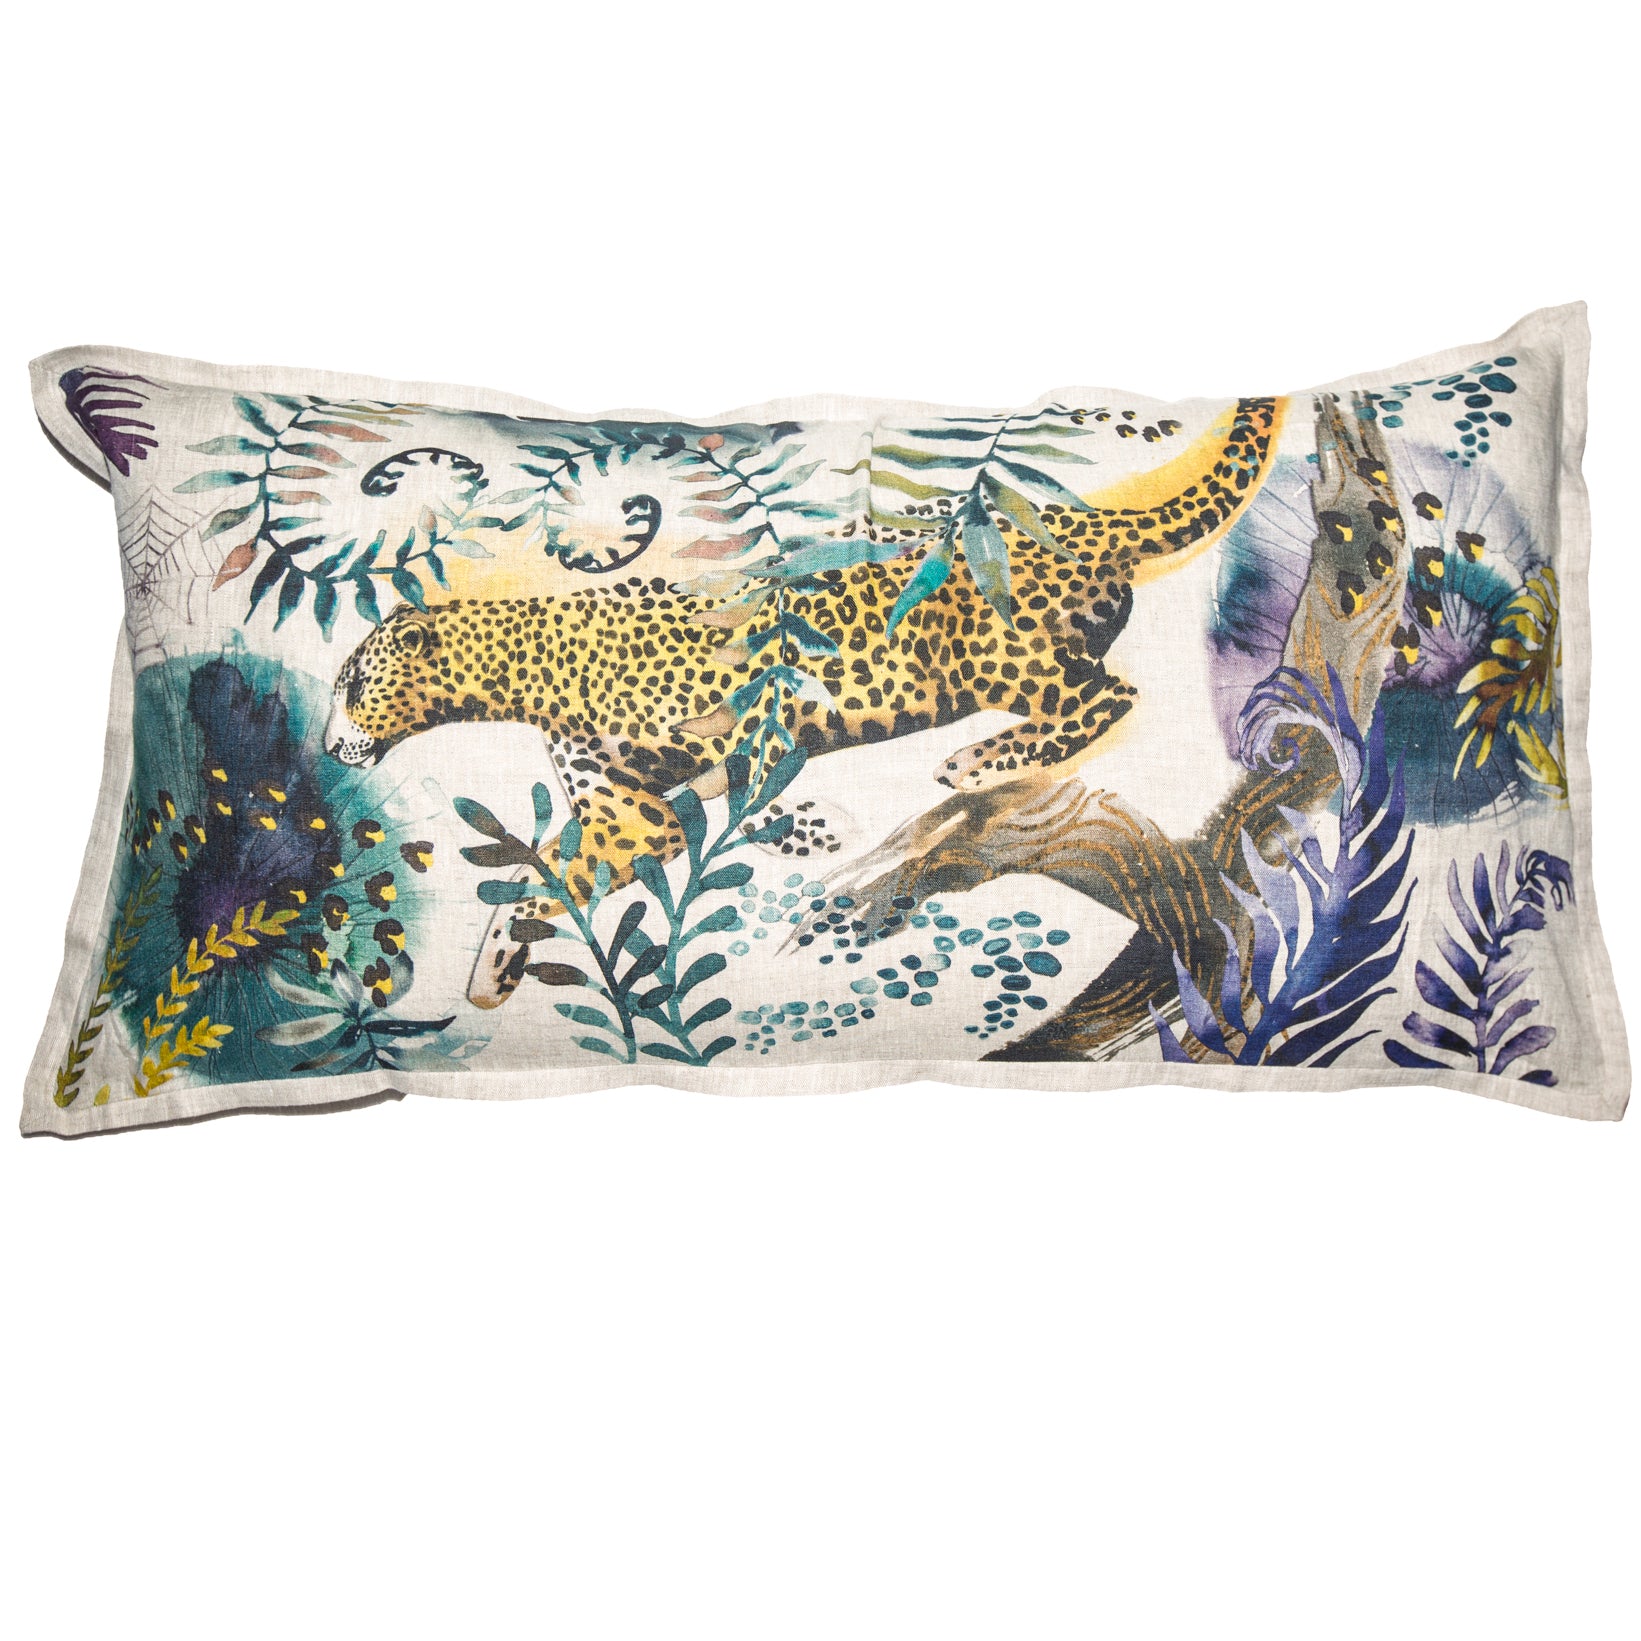 Cape Leopard Cushion Cover, Large, Belgian Linen